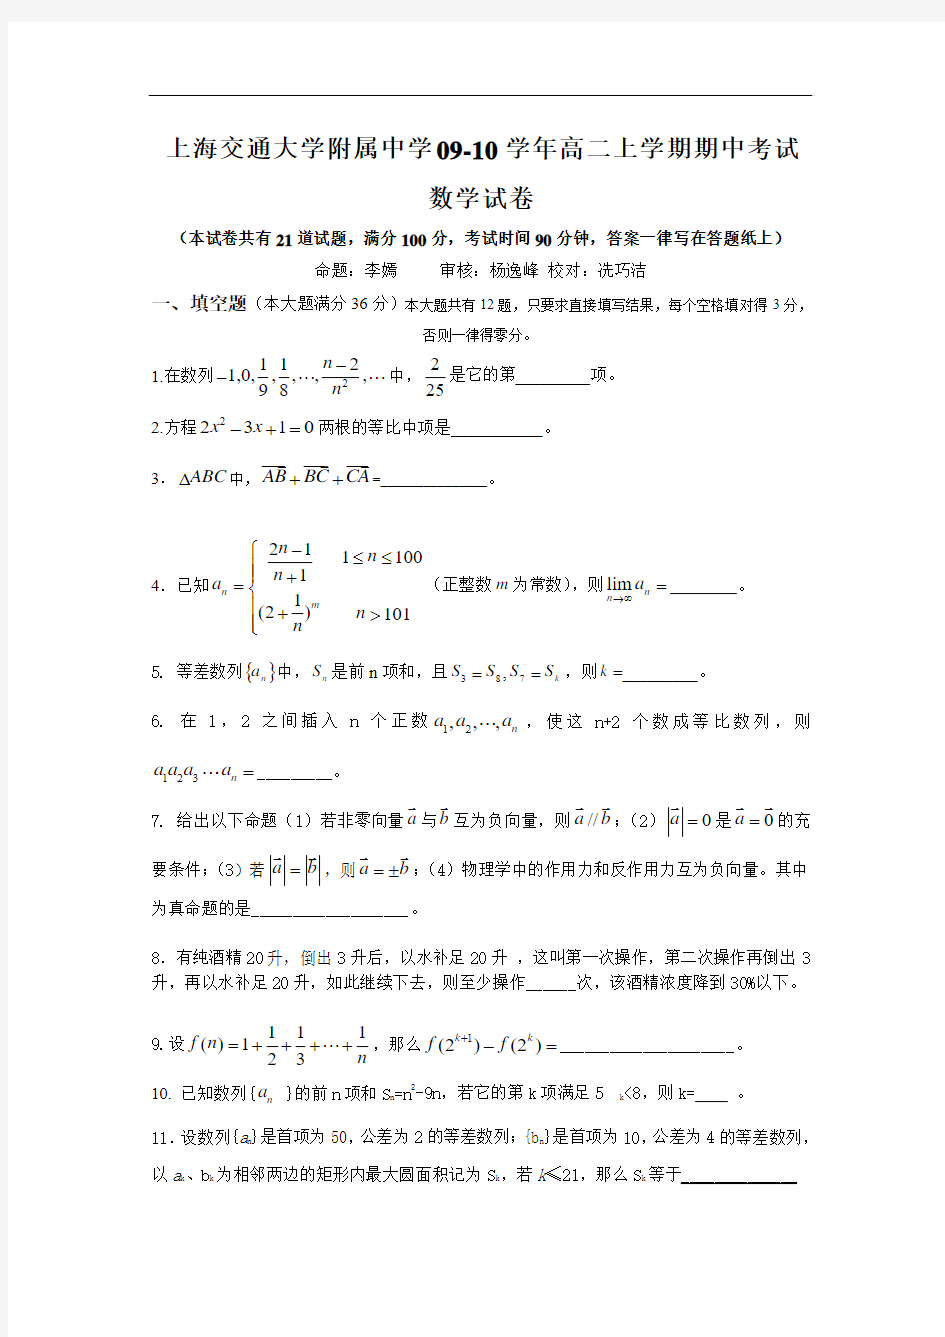 上海交大附中09-10学年高二上学期期中考试(数学)